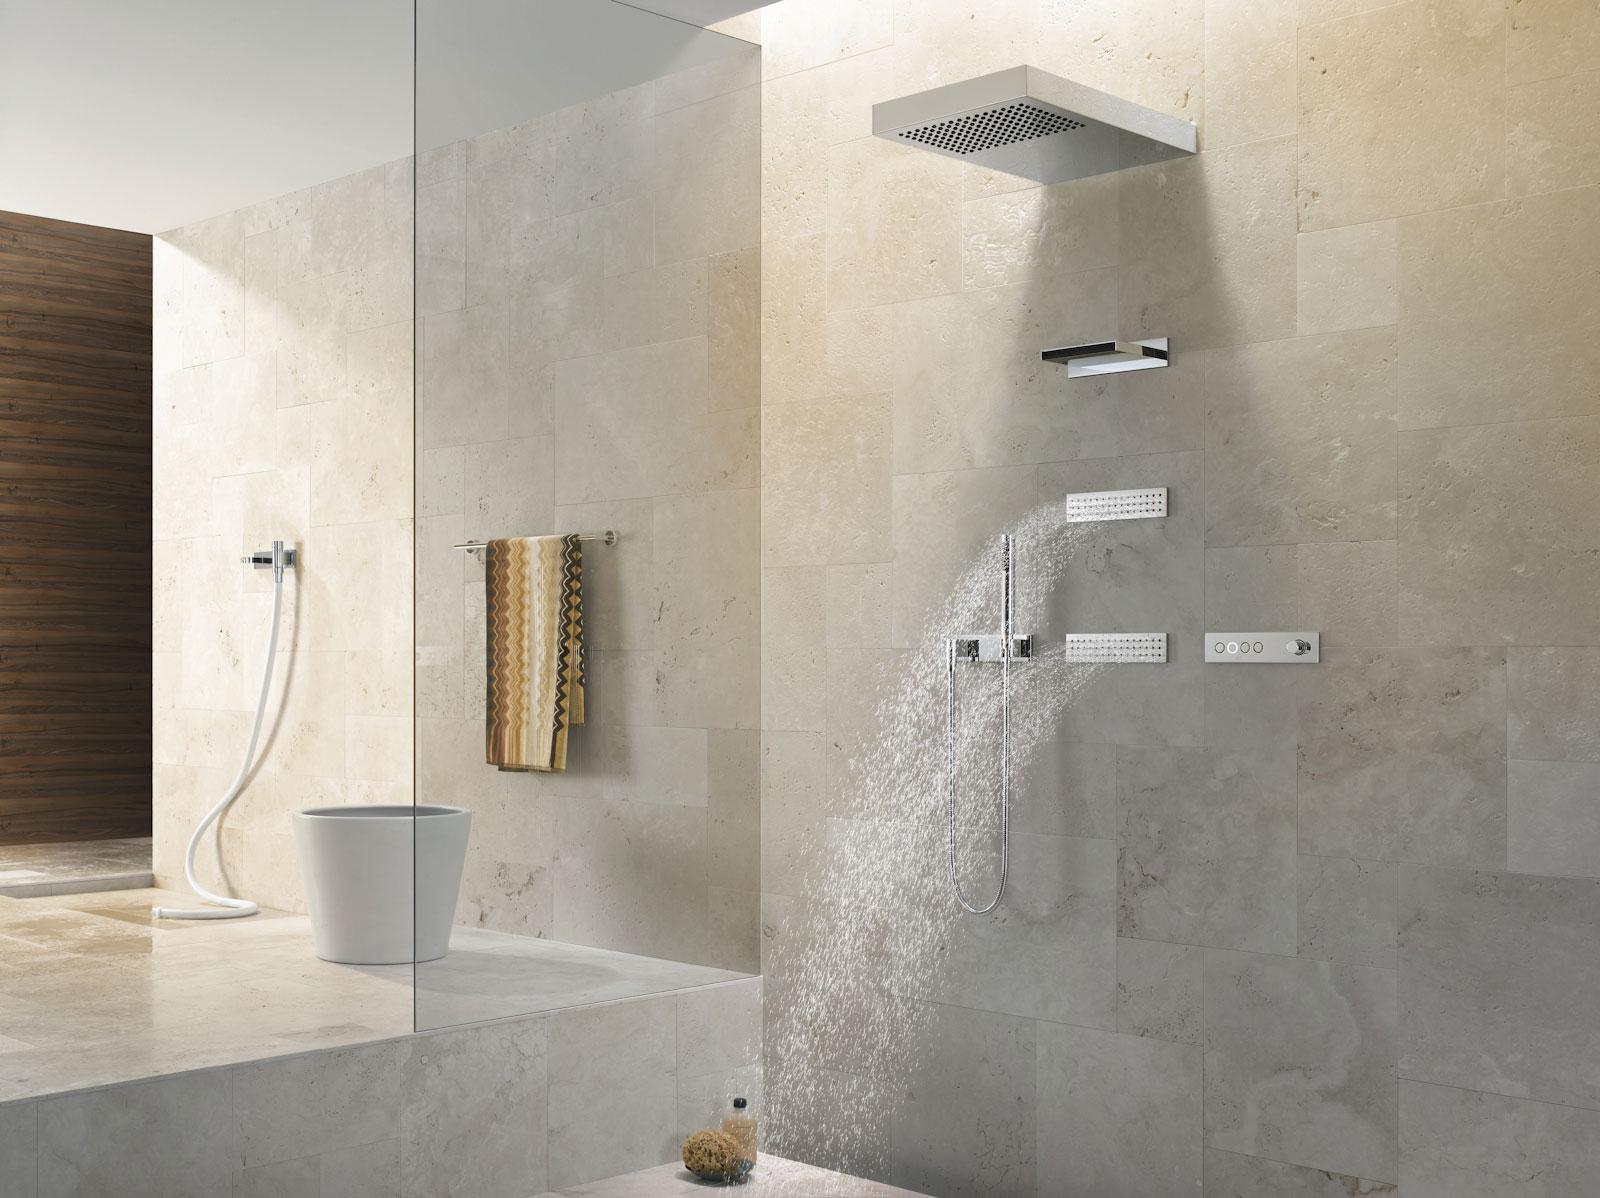 Dusche "Vertical Shower" von Dornbracht #badezimmerspiegel #dusche #spiegel #badeinrichtung #grauefliesen #smarthome #wellness #modernedusche ©Dornbracht